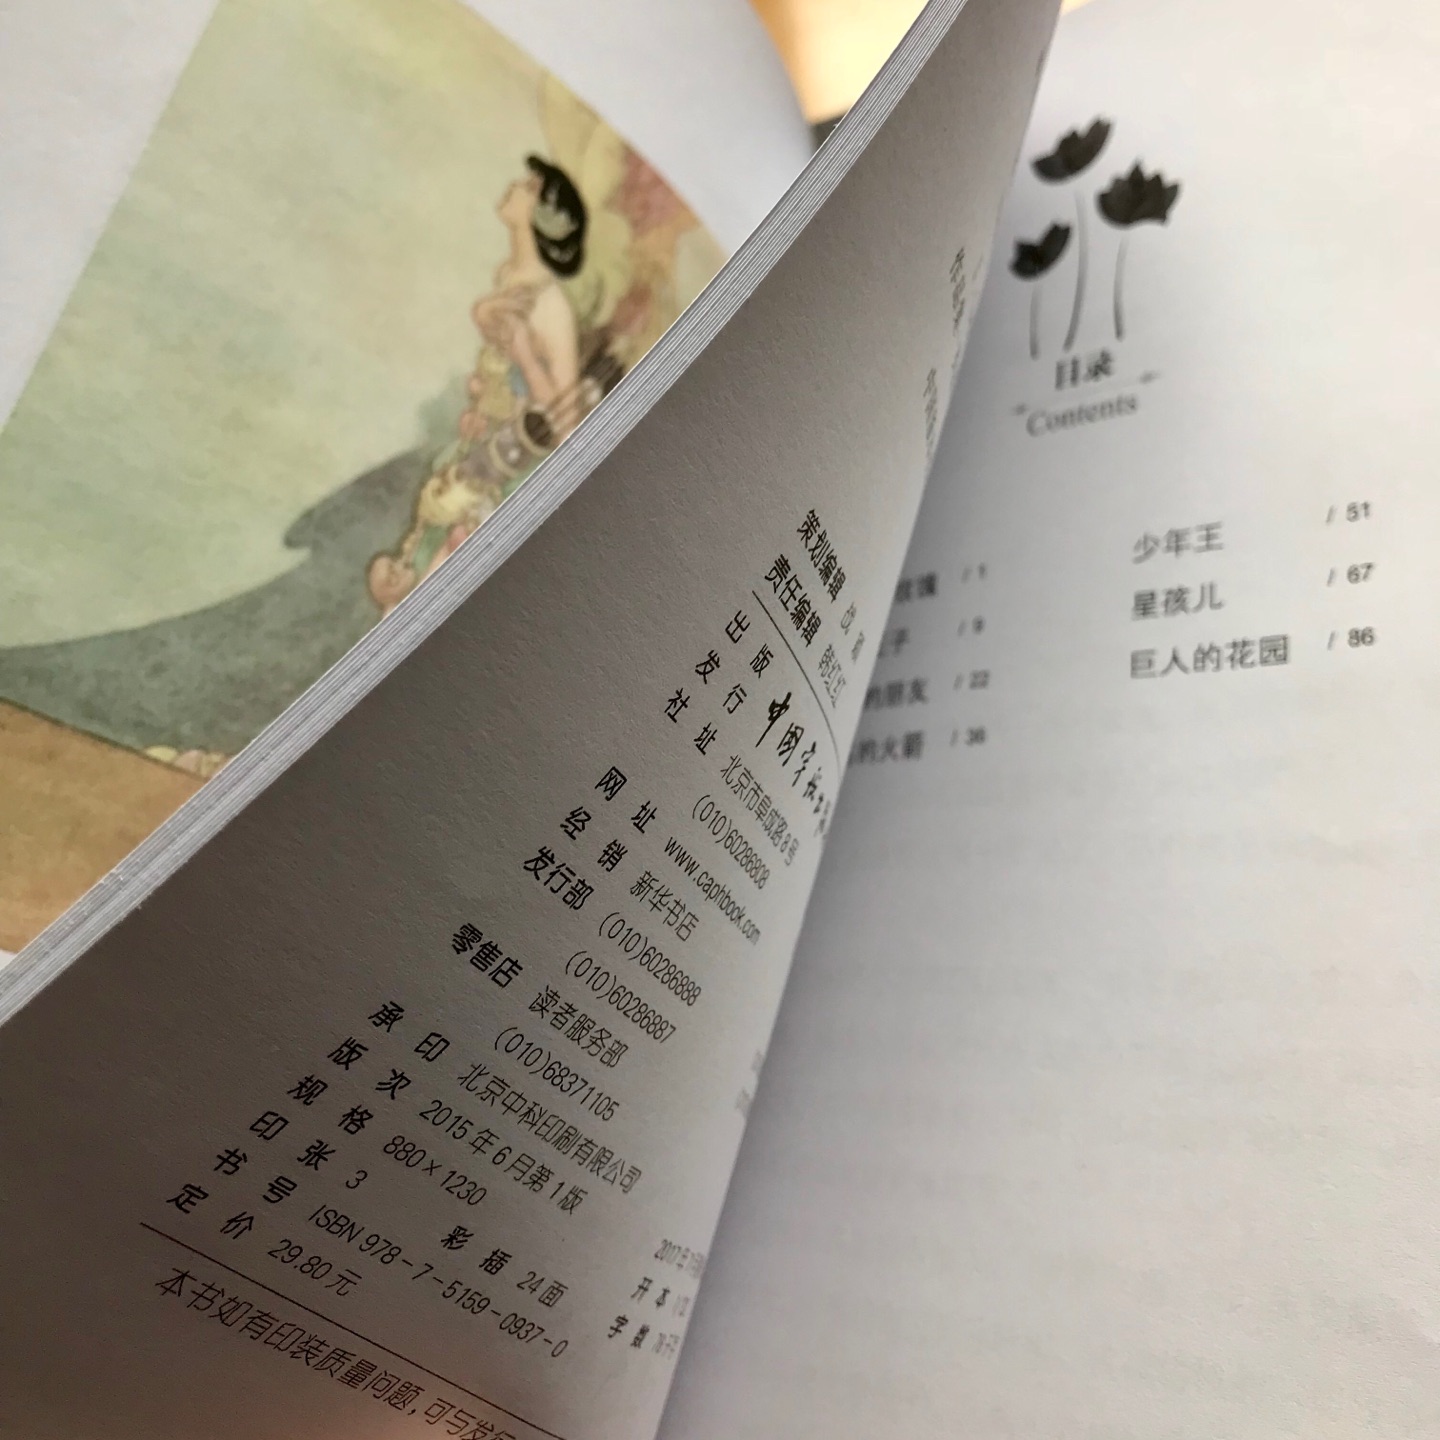 中文版一本，英文版一本。中文版有一半是彩页插图，英文版有注释。个人不是很喜欢这样的装帧，不方便翻页，容易脱线撕裂。